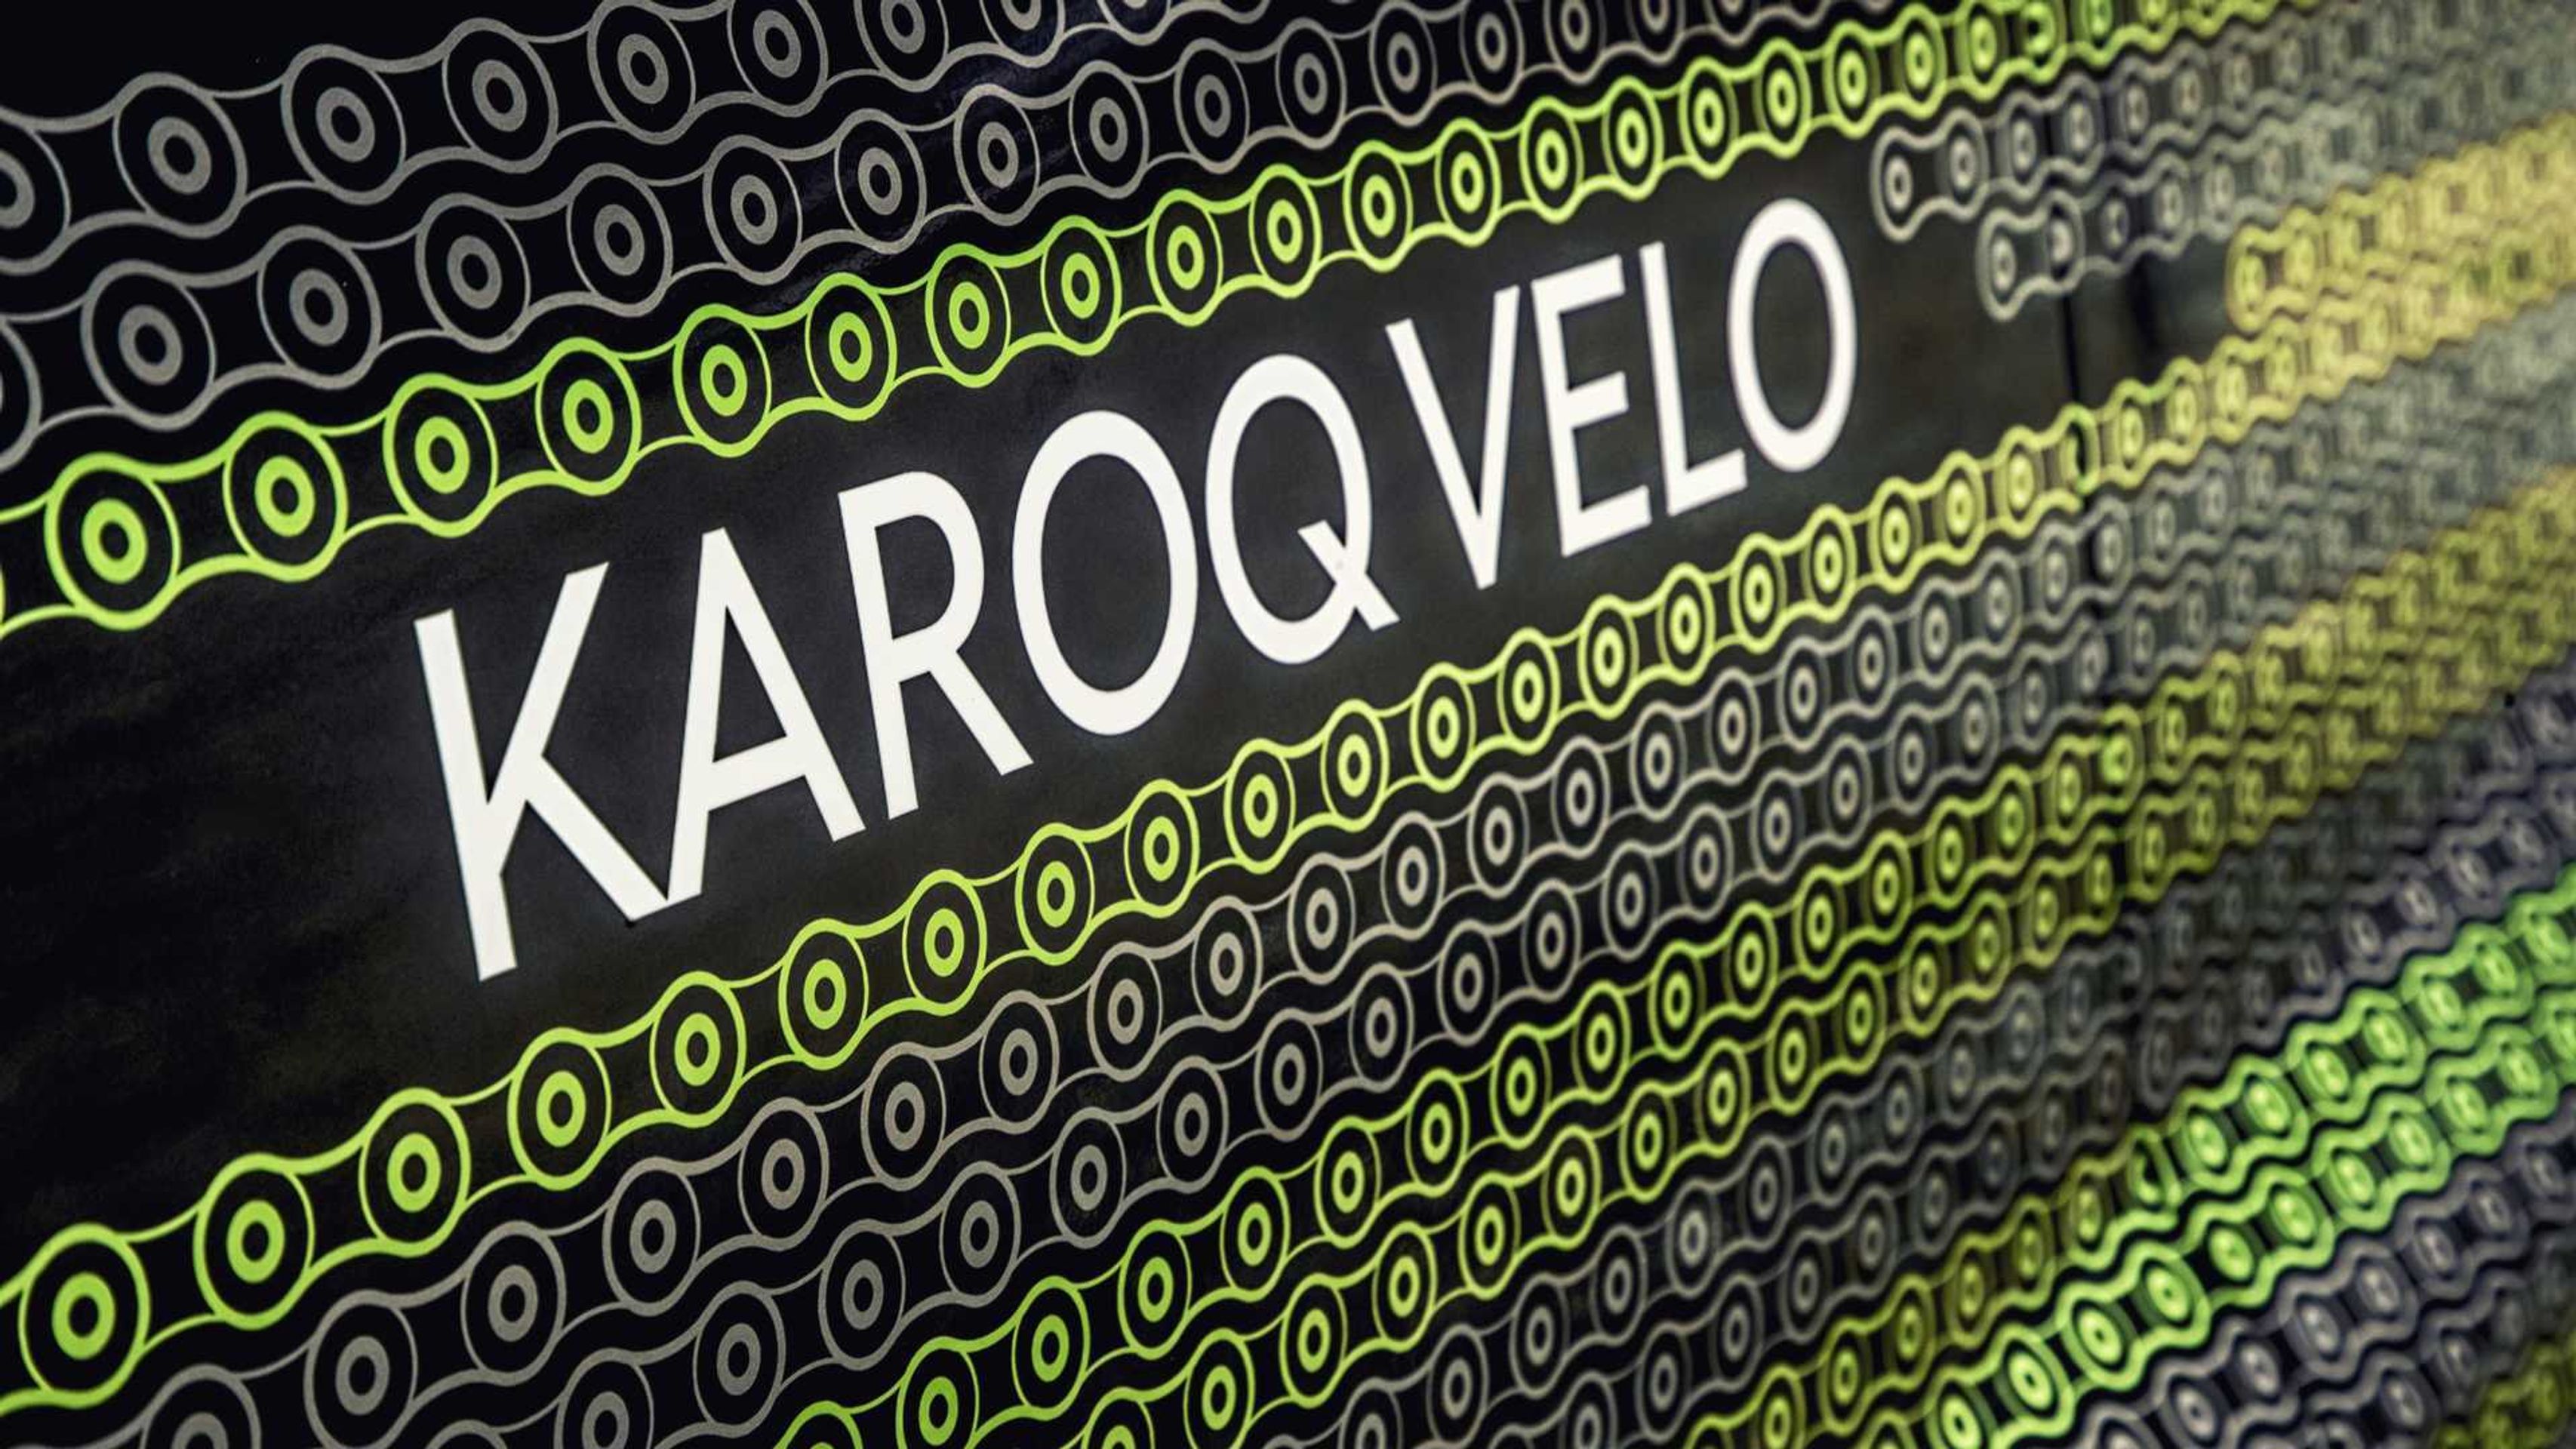 Koncept Škoda Karoq Velo - 13 - Fotogalerie: Karoq stvořený pro cyklisty (9/11)